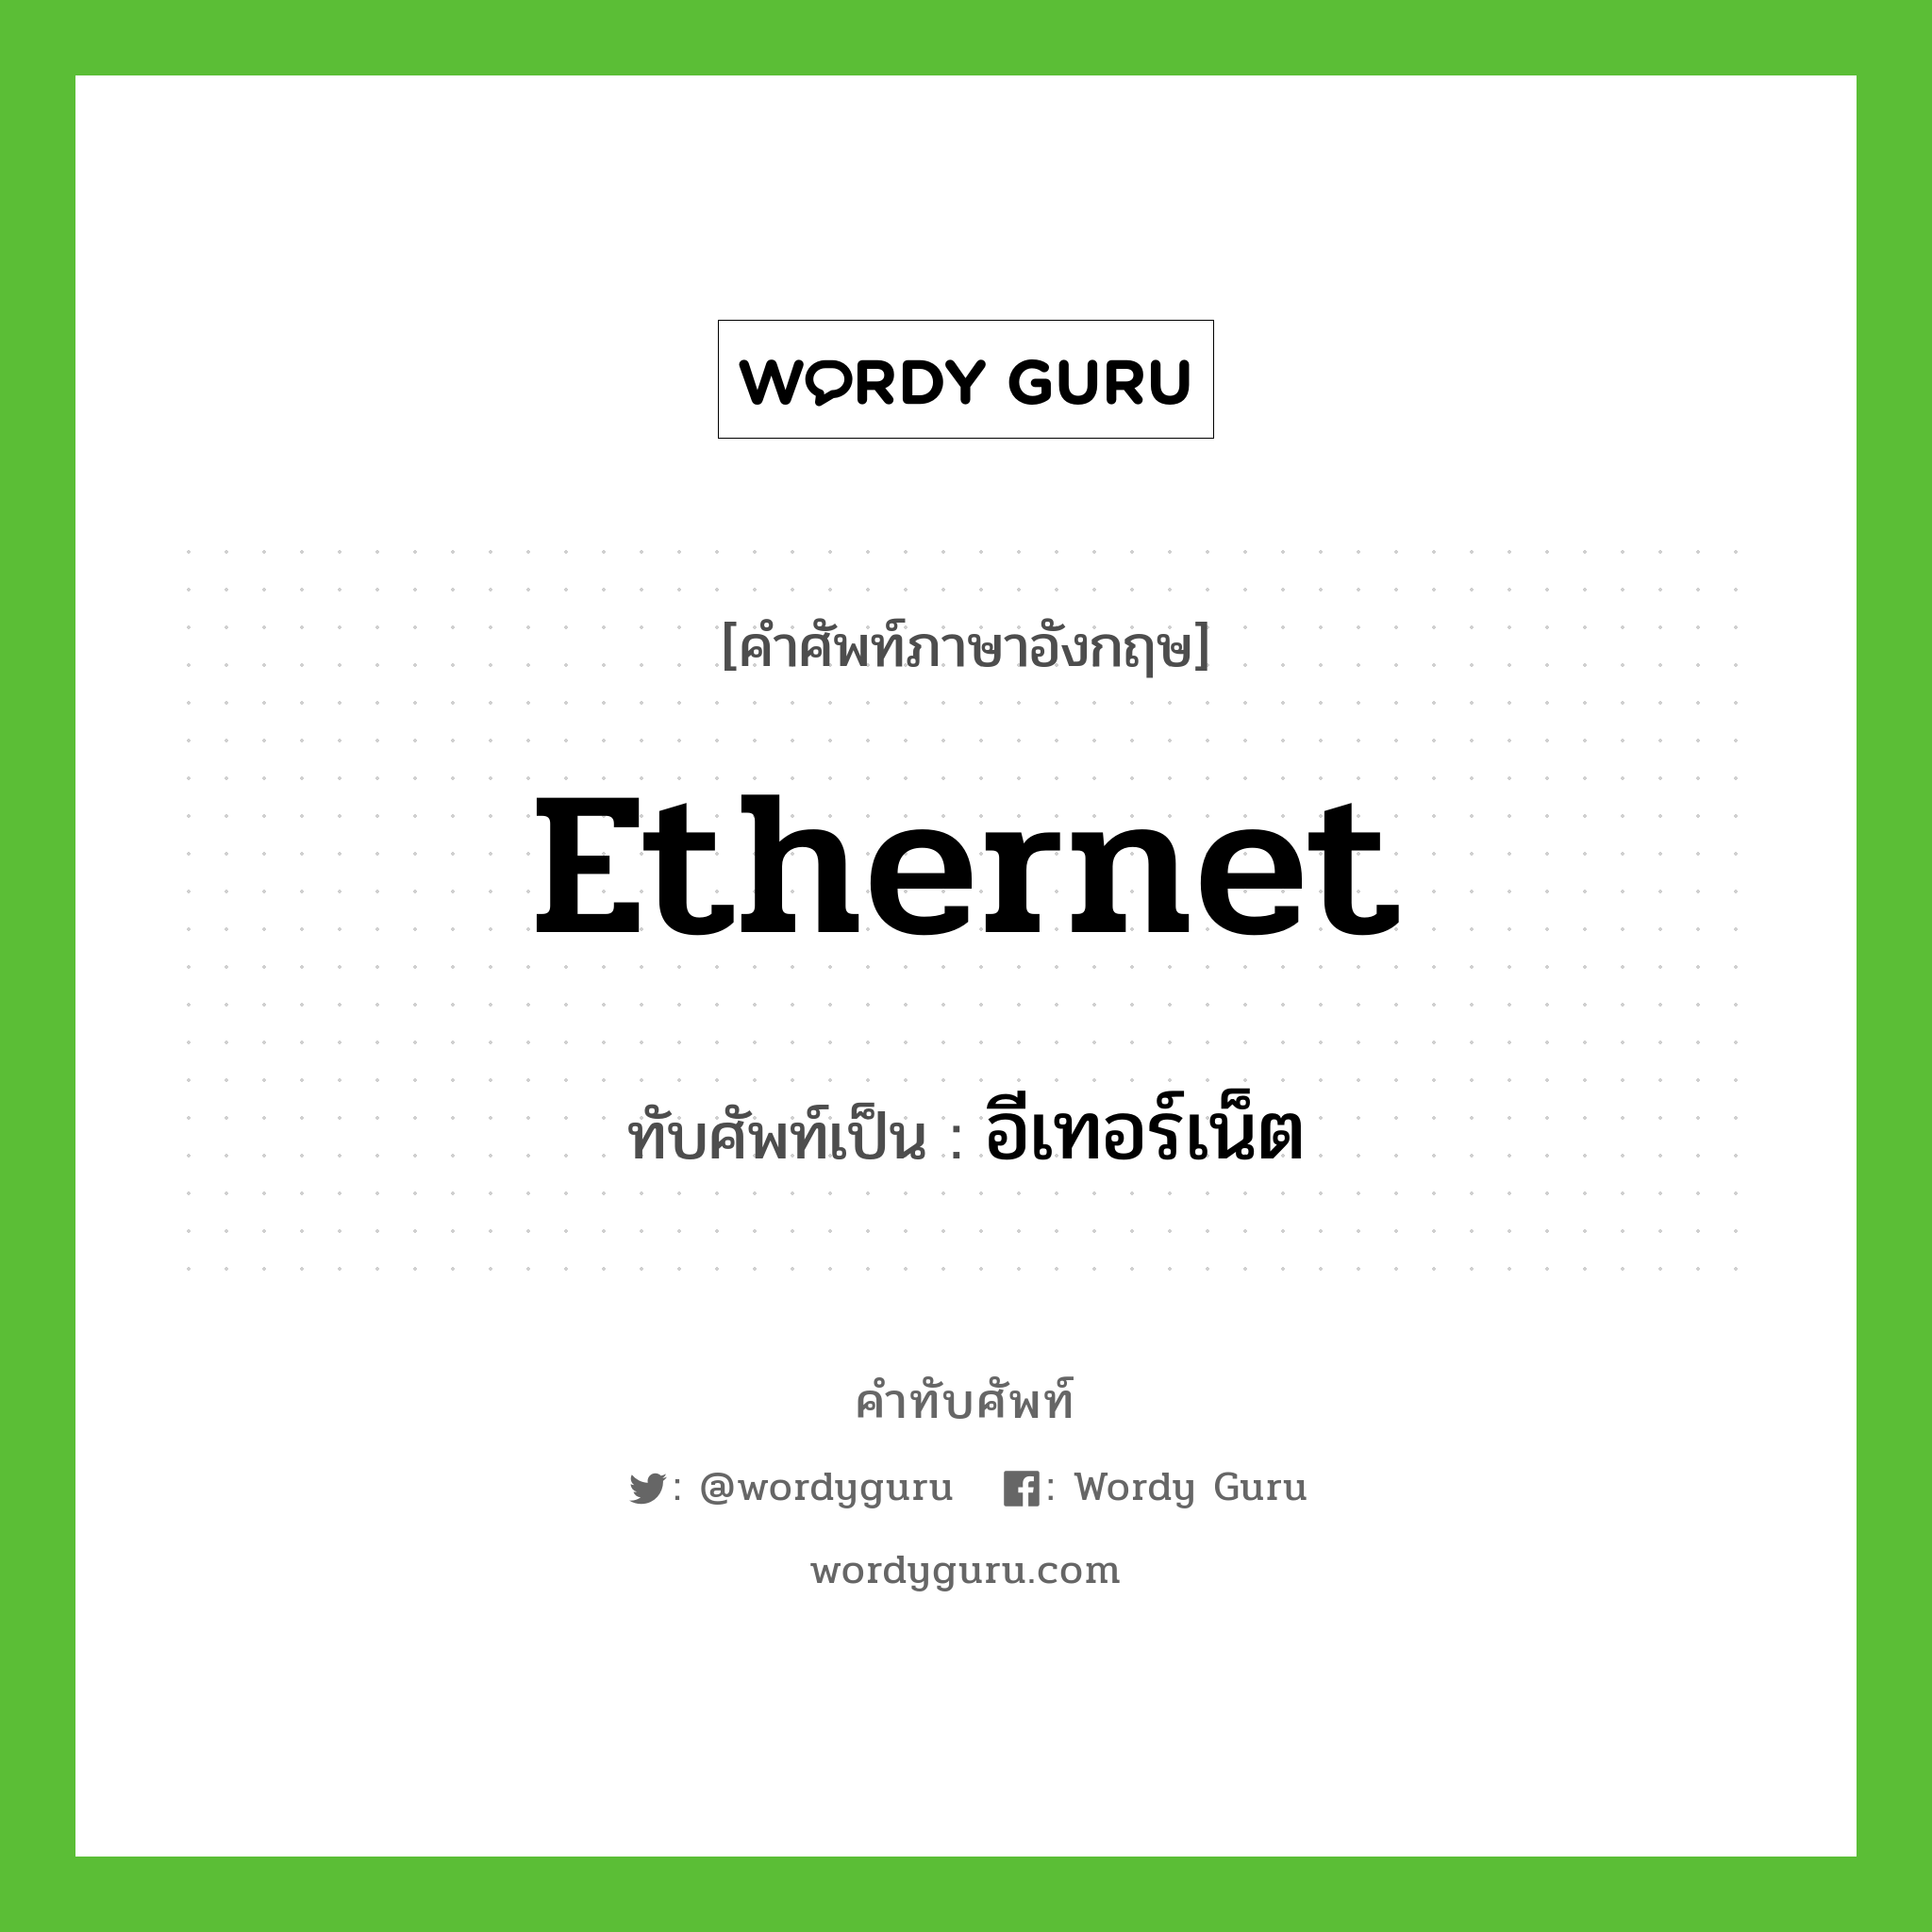 Ethernet เขียนเป็นคำไทยว่าอะไร?, คำศัพท์ภาษาอังกฤษ Ethernet ทับศัพท์เป็น อีเทอร์เน็ต